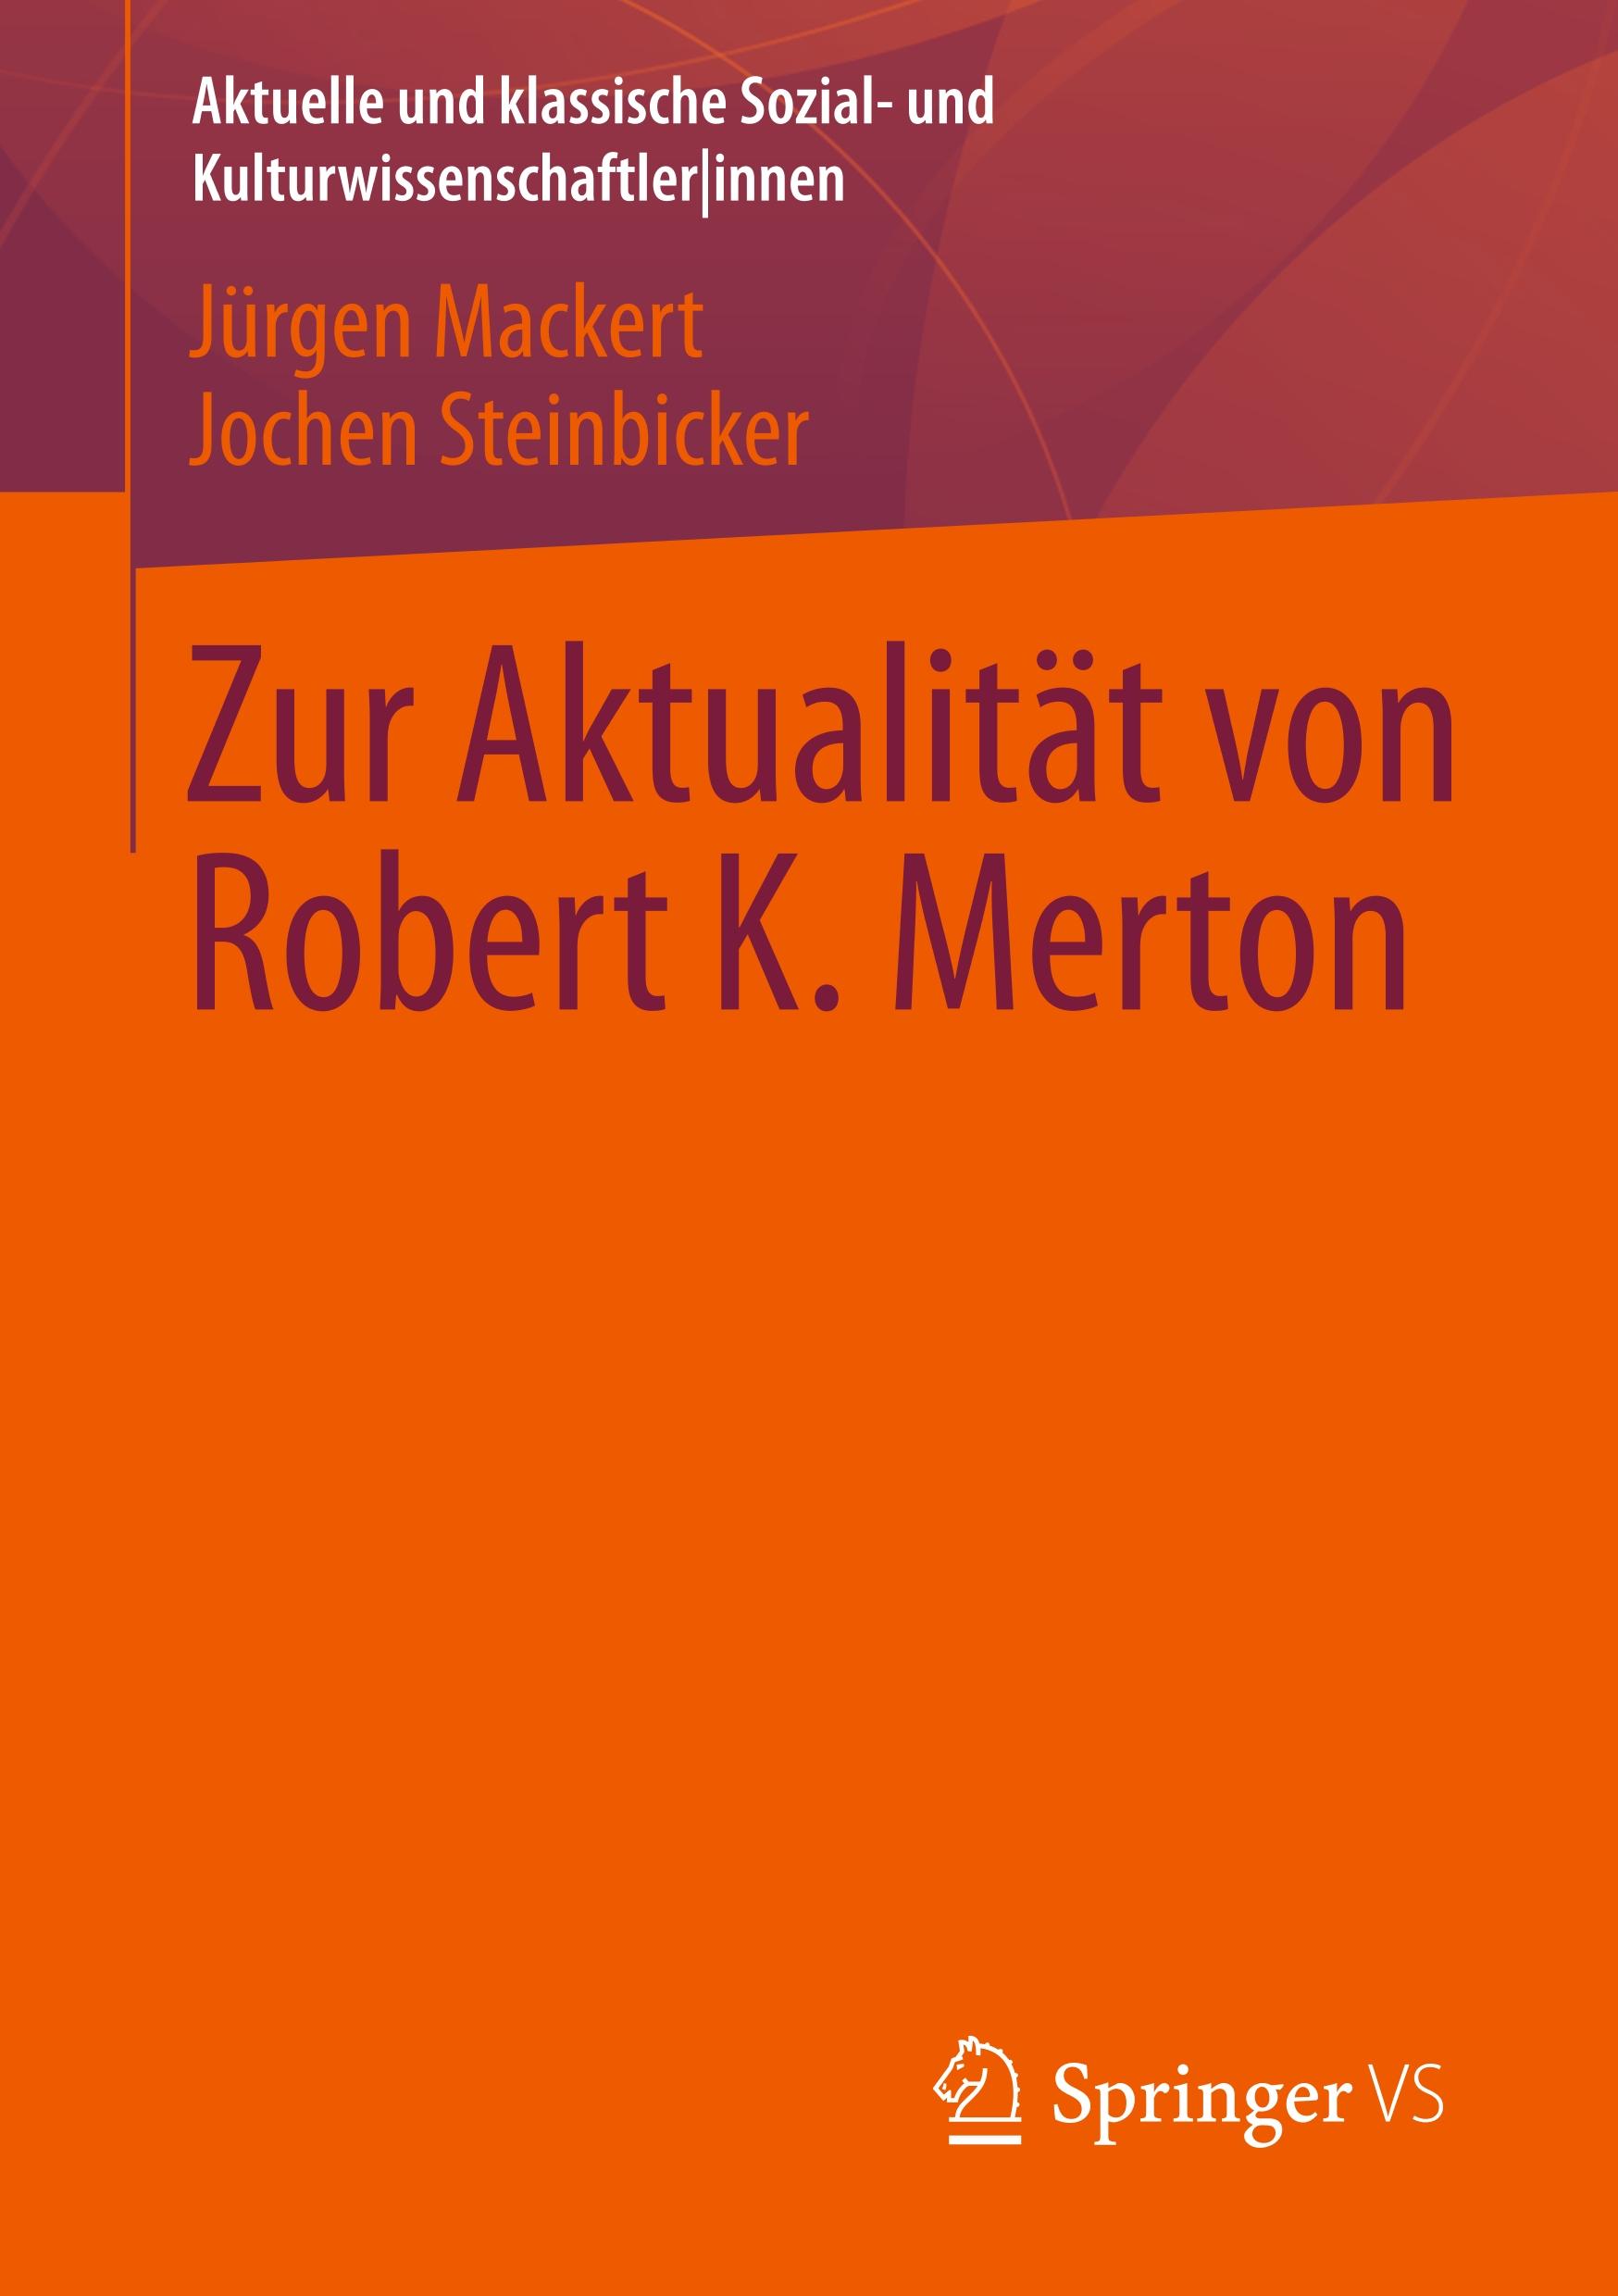 Zur Aktualitaet von Robert K. Merton - Jürgen Mackert|Jochen Steinbicker